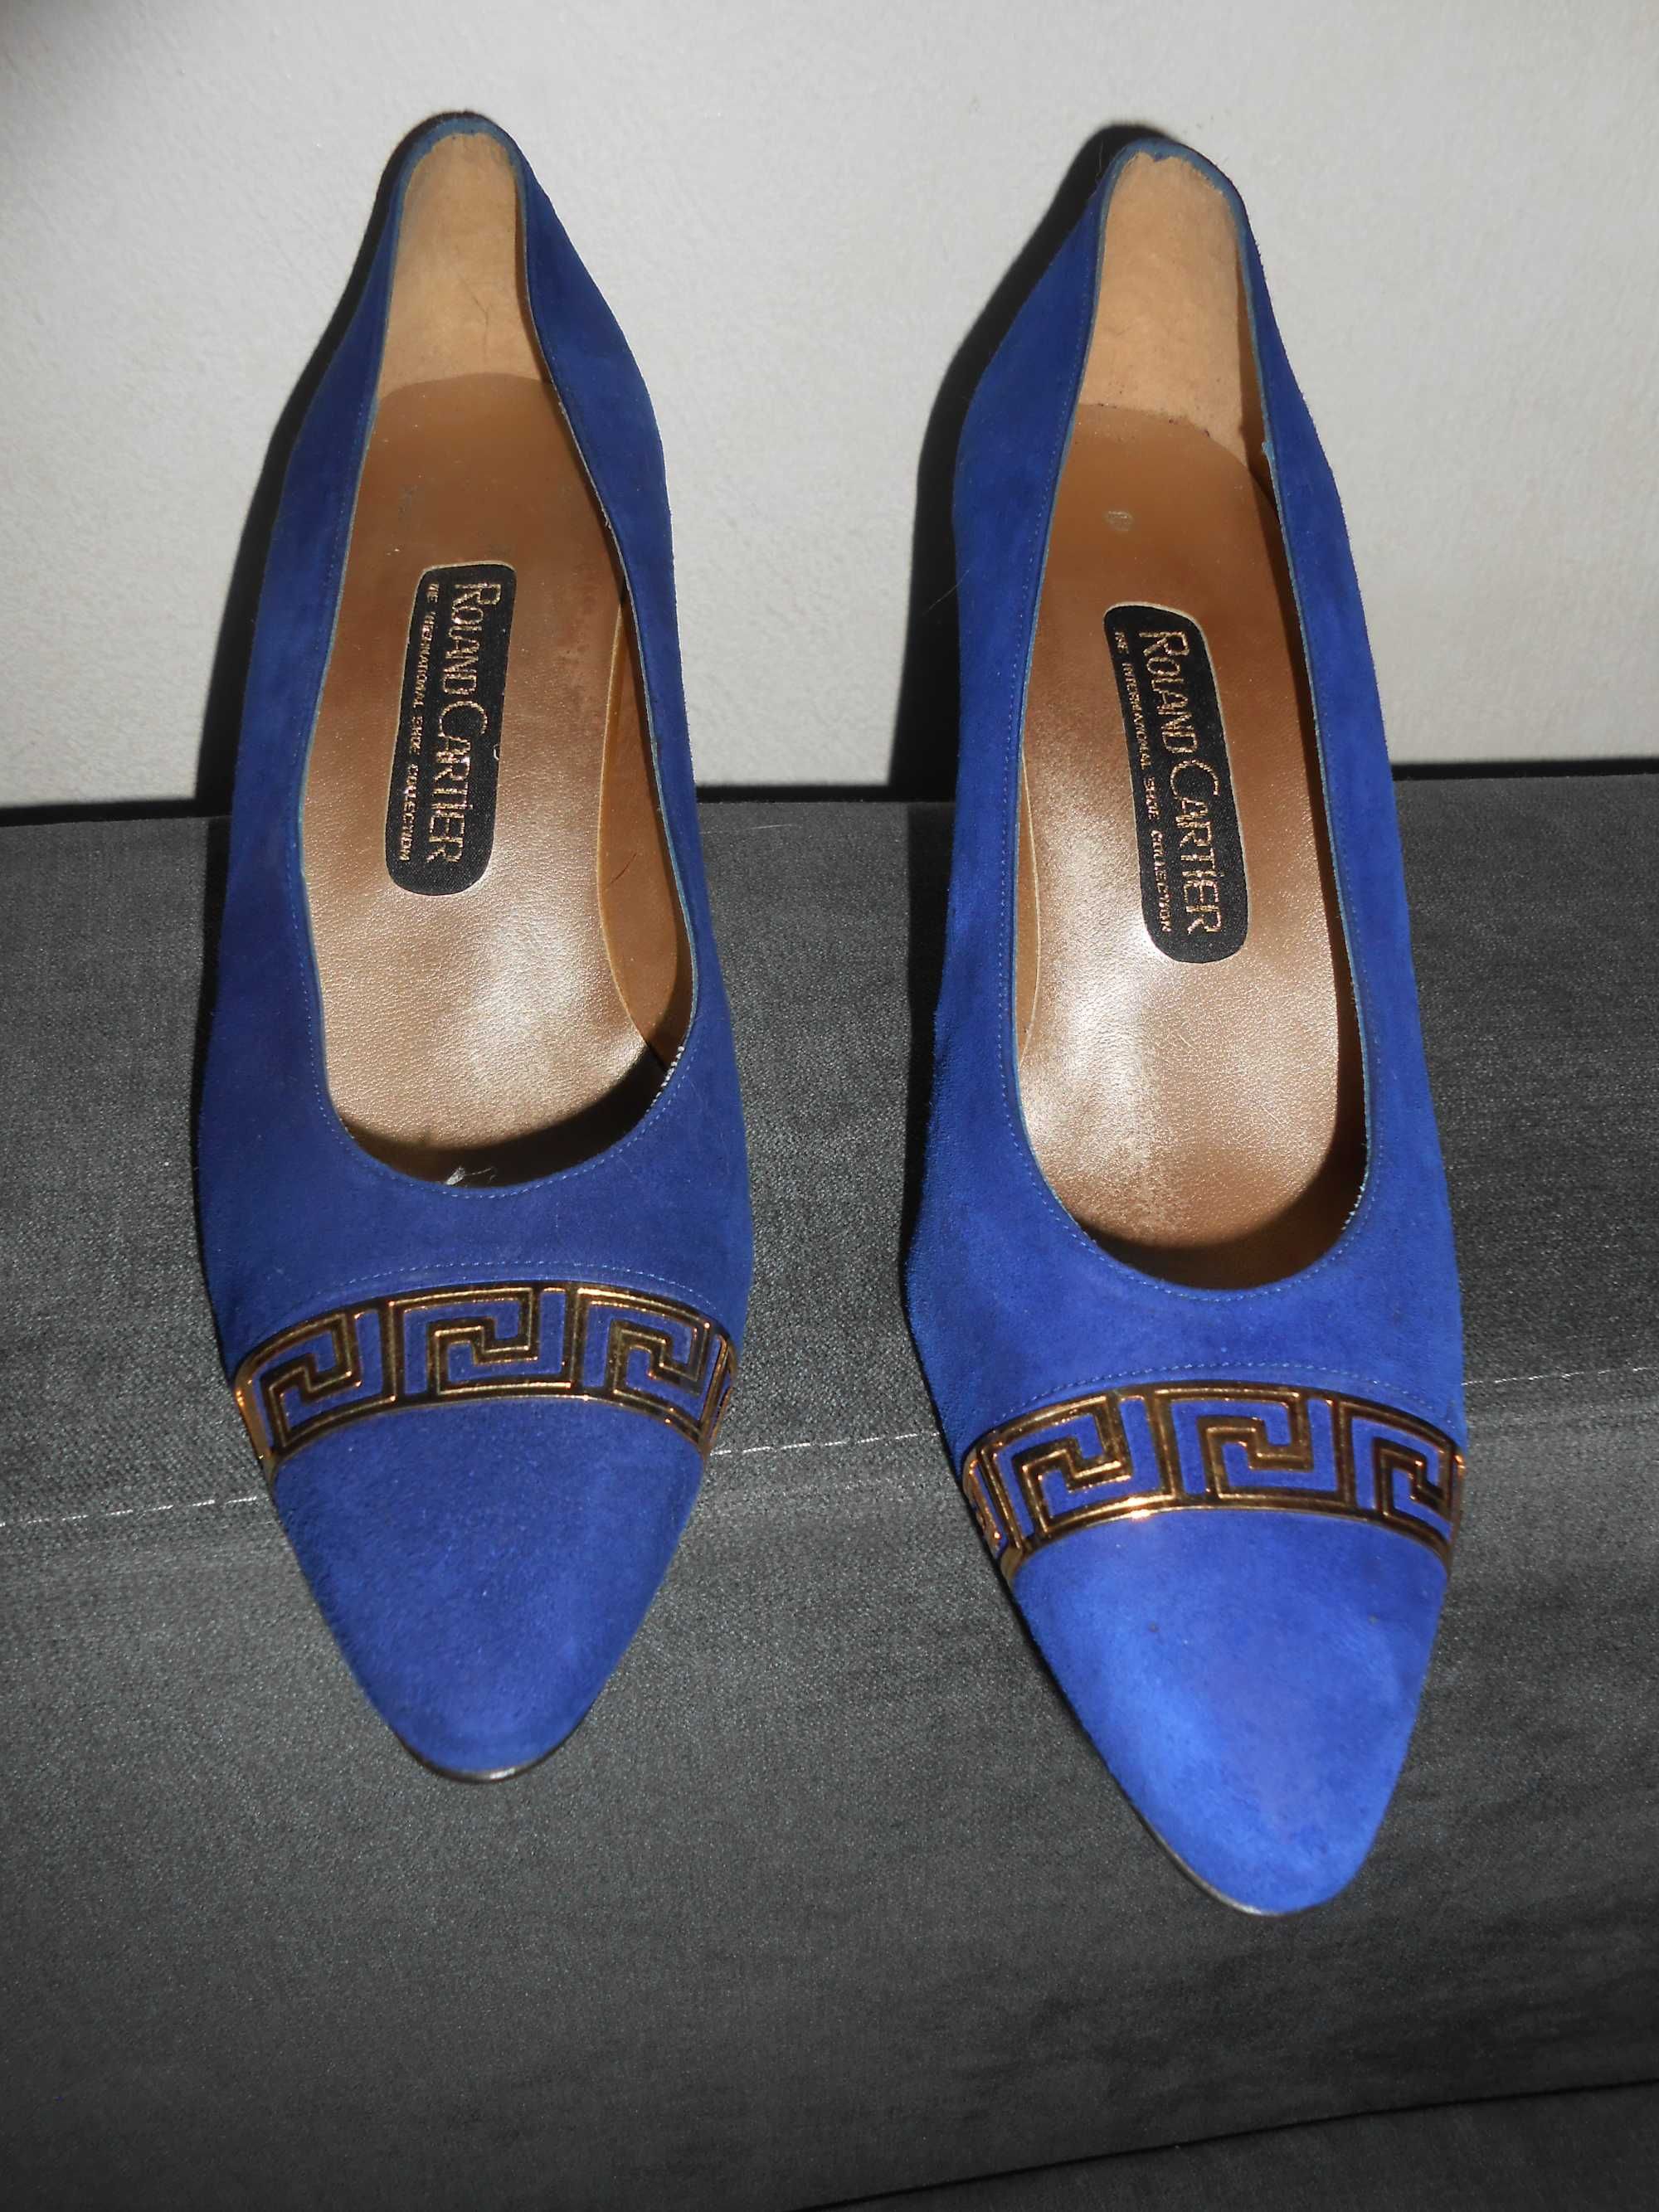 Roland Cartier buty na obcasie,niebieskie,38/24 cm